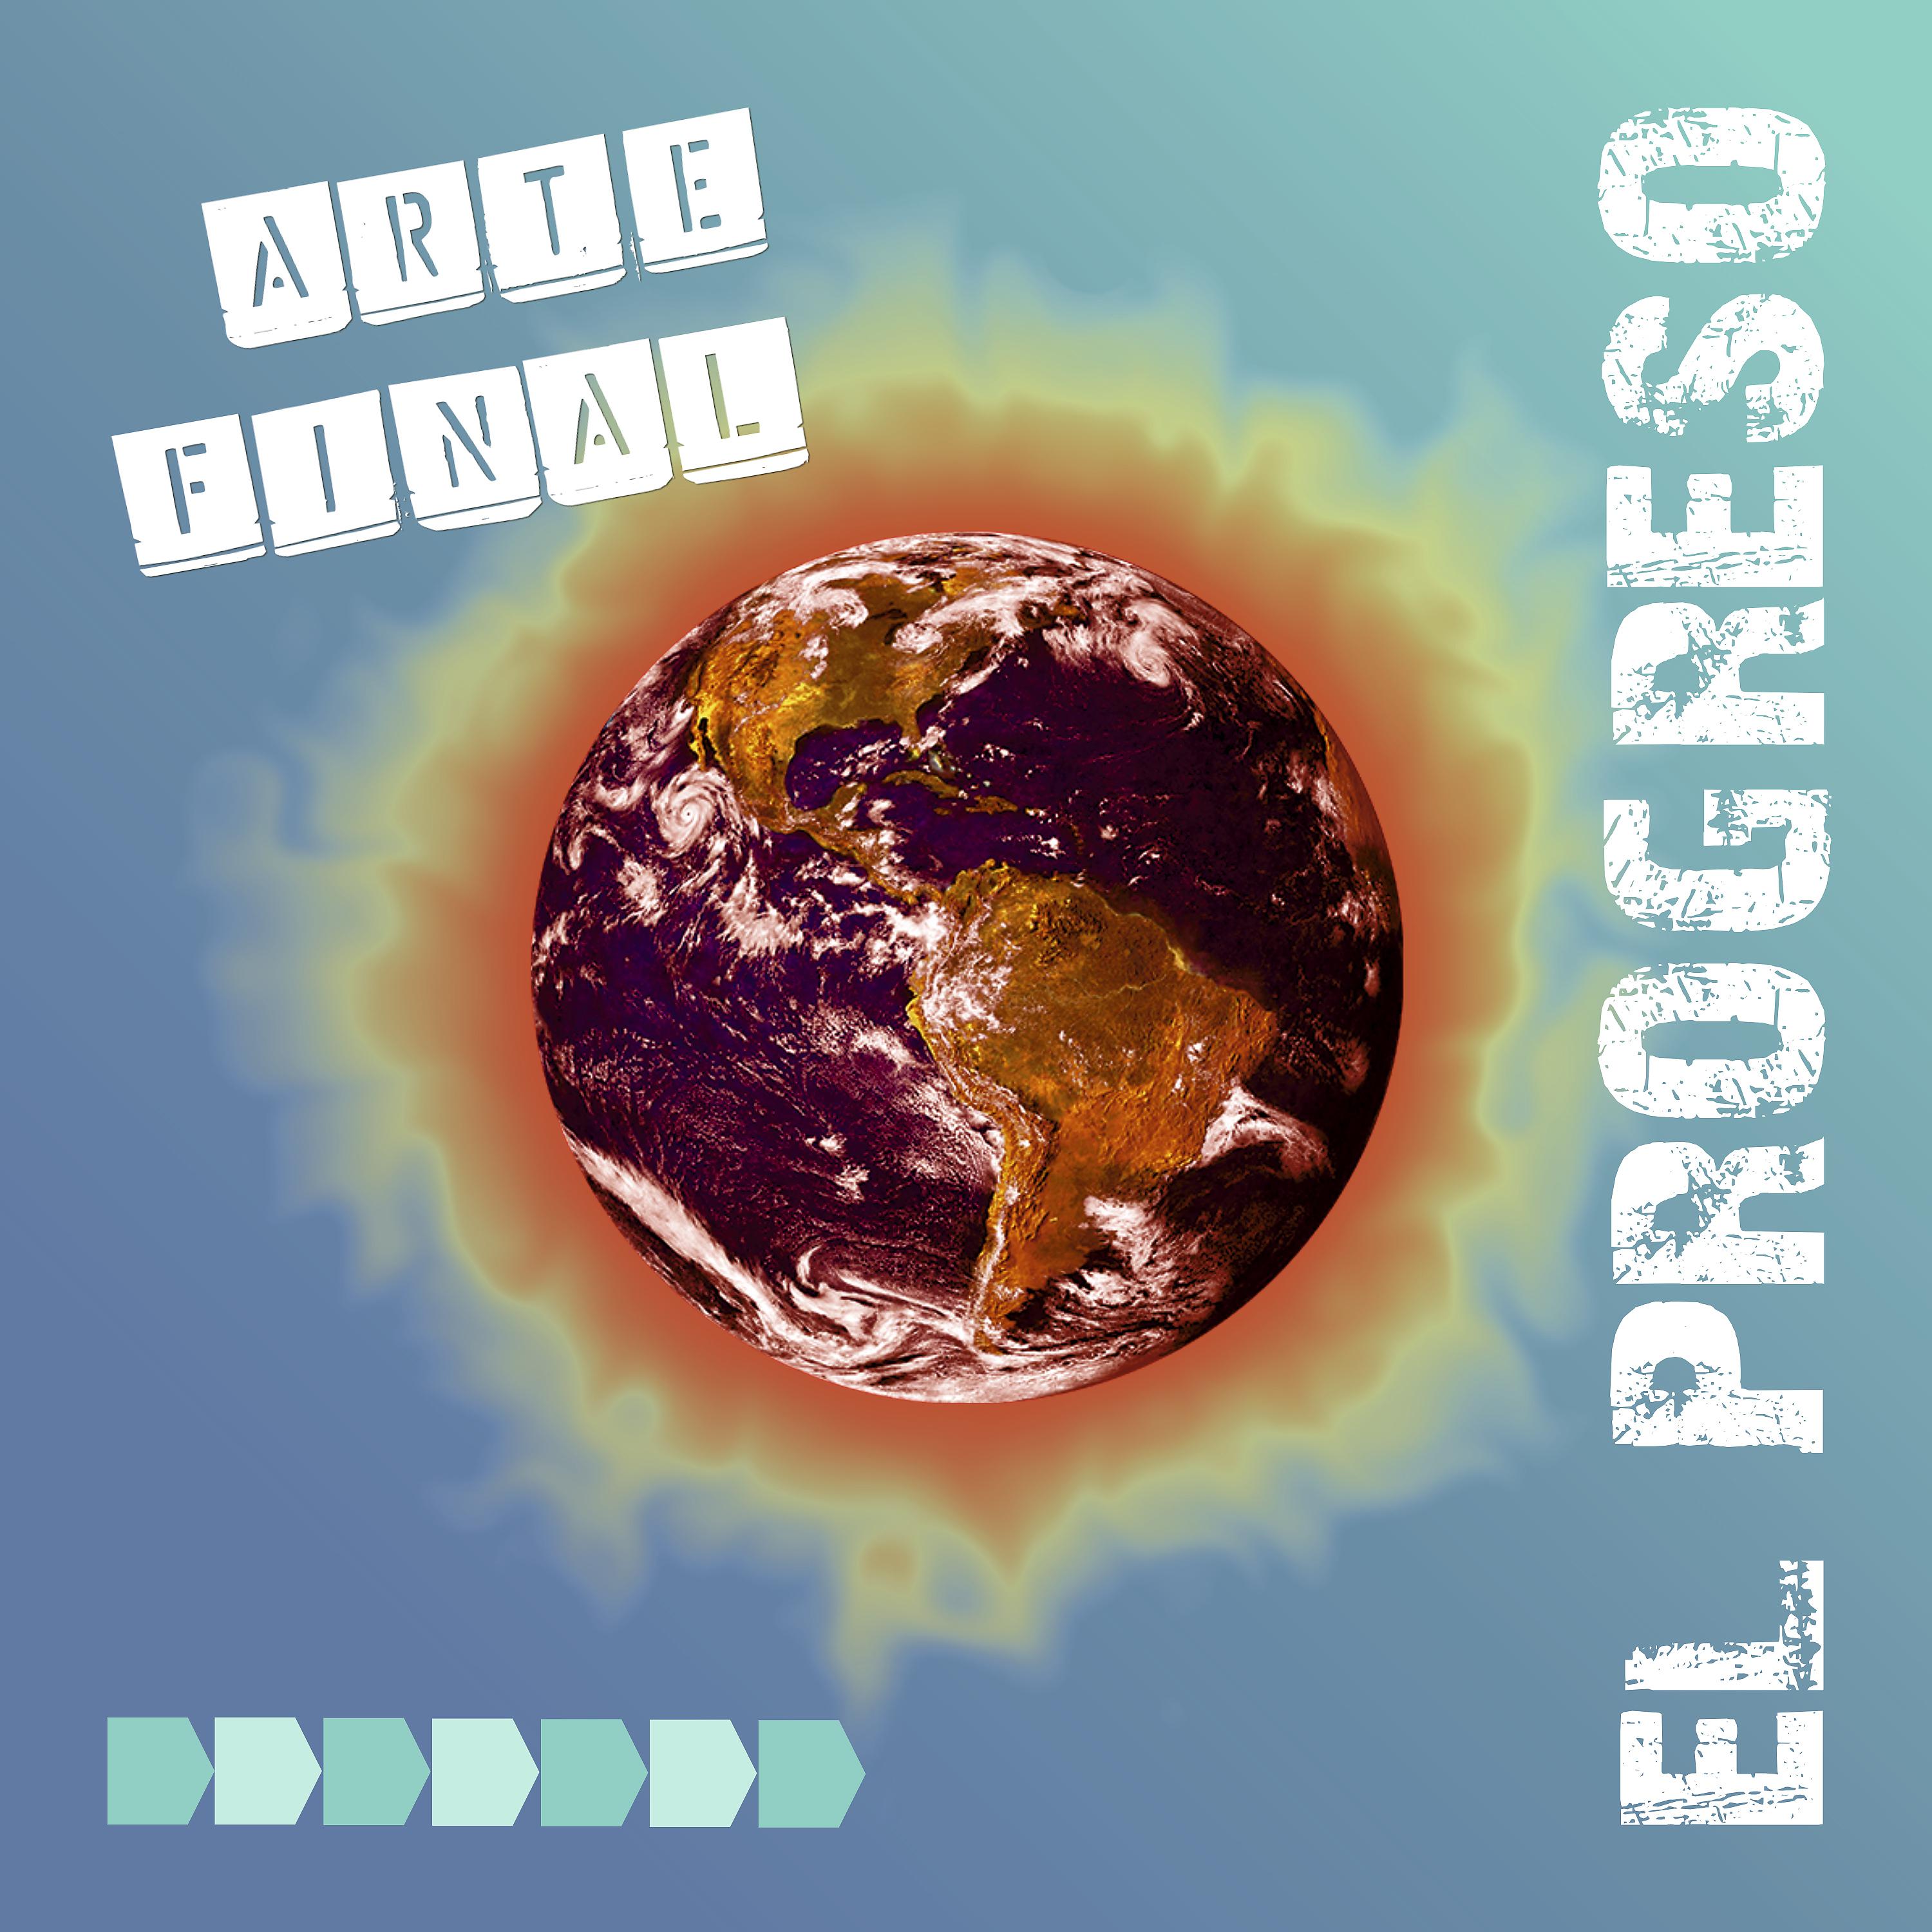 Постер альбома El Progreso